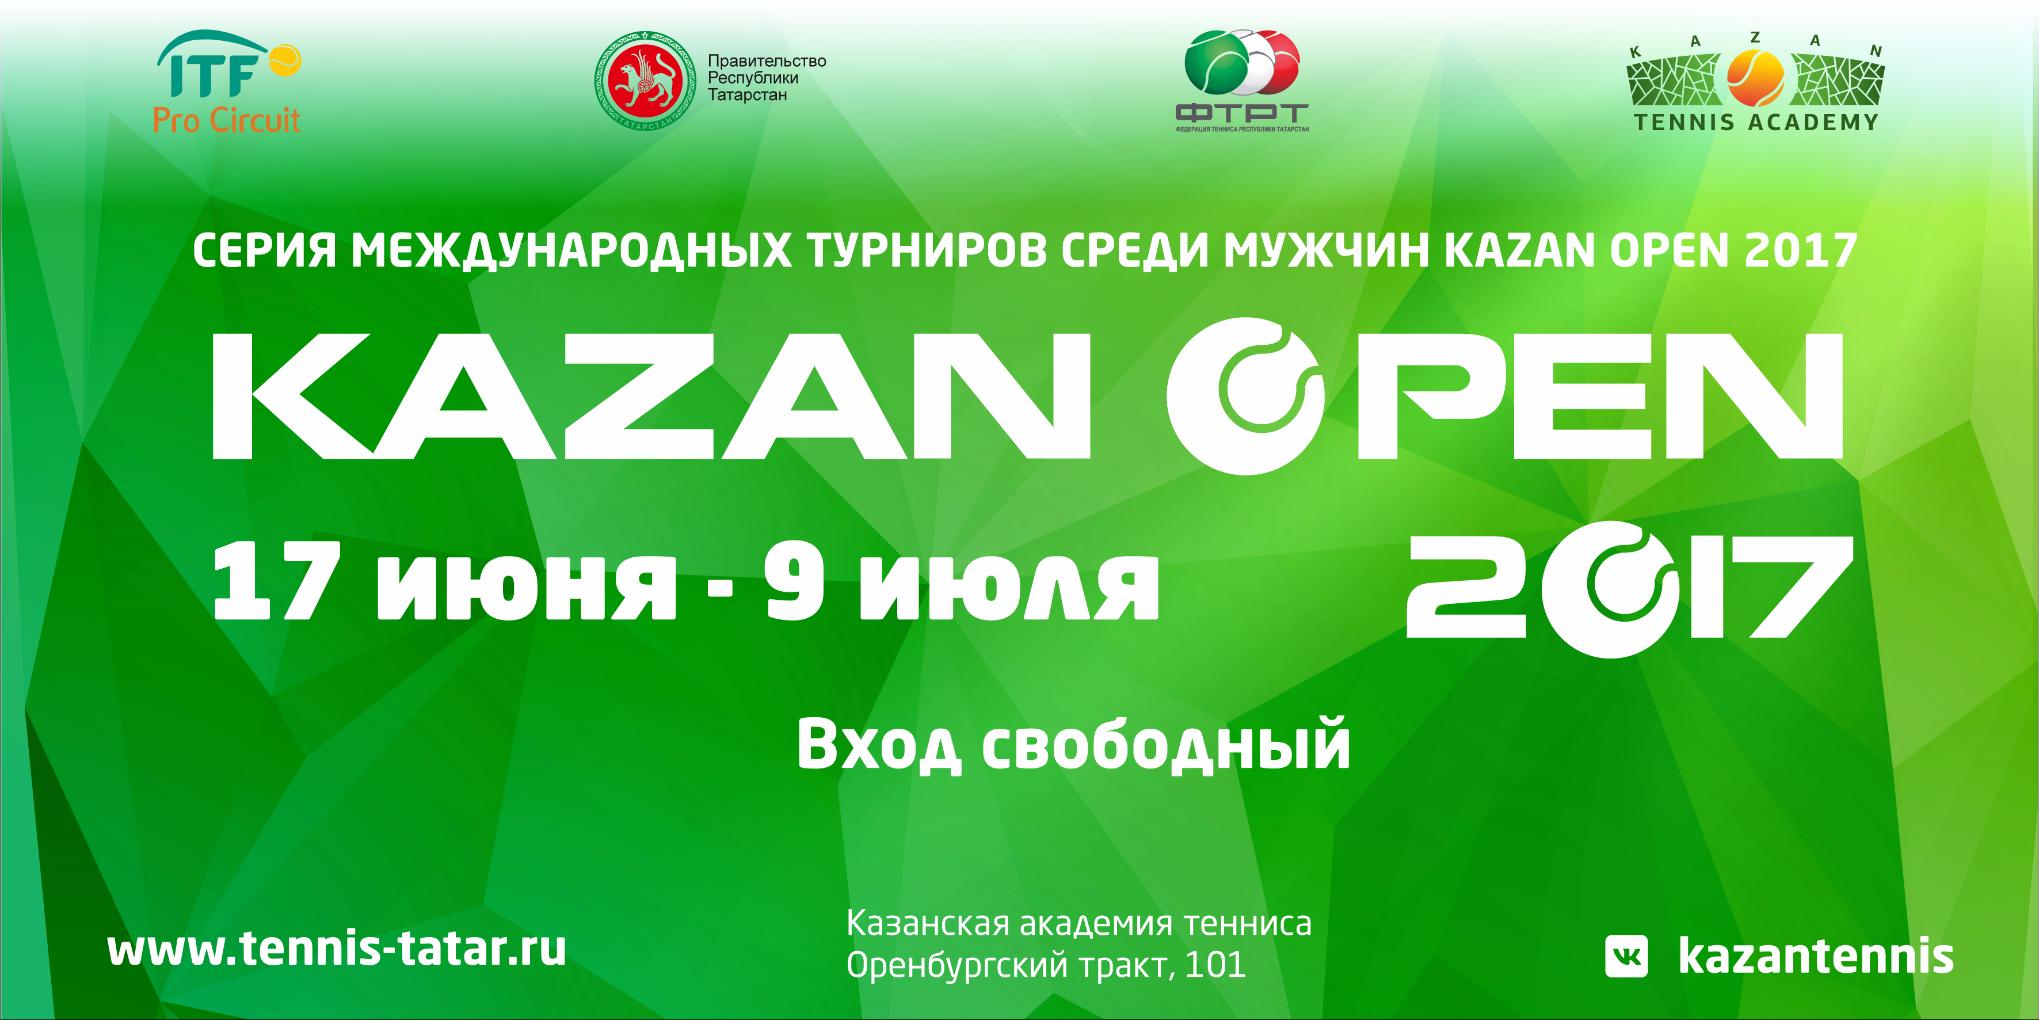 «Kazan Open 2017» пройдет на «хард» кортах и обзаведется новым призовым фондом